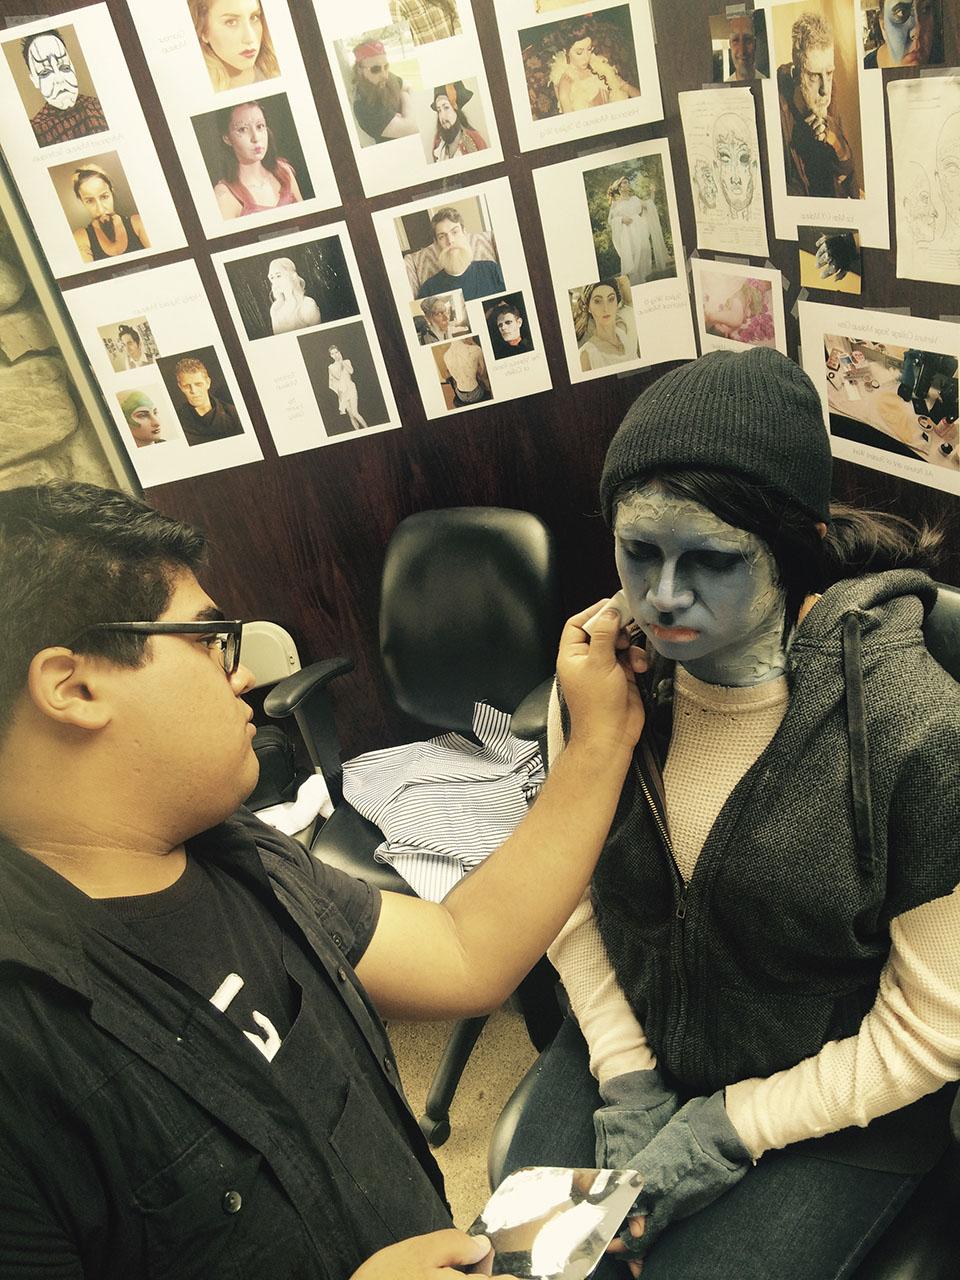 一名黑发男学生给一名戴着黑色无边帽的学生画上了怪物般的灰色角色妆容. 她们身后的墙上挂着化妆照.